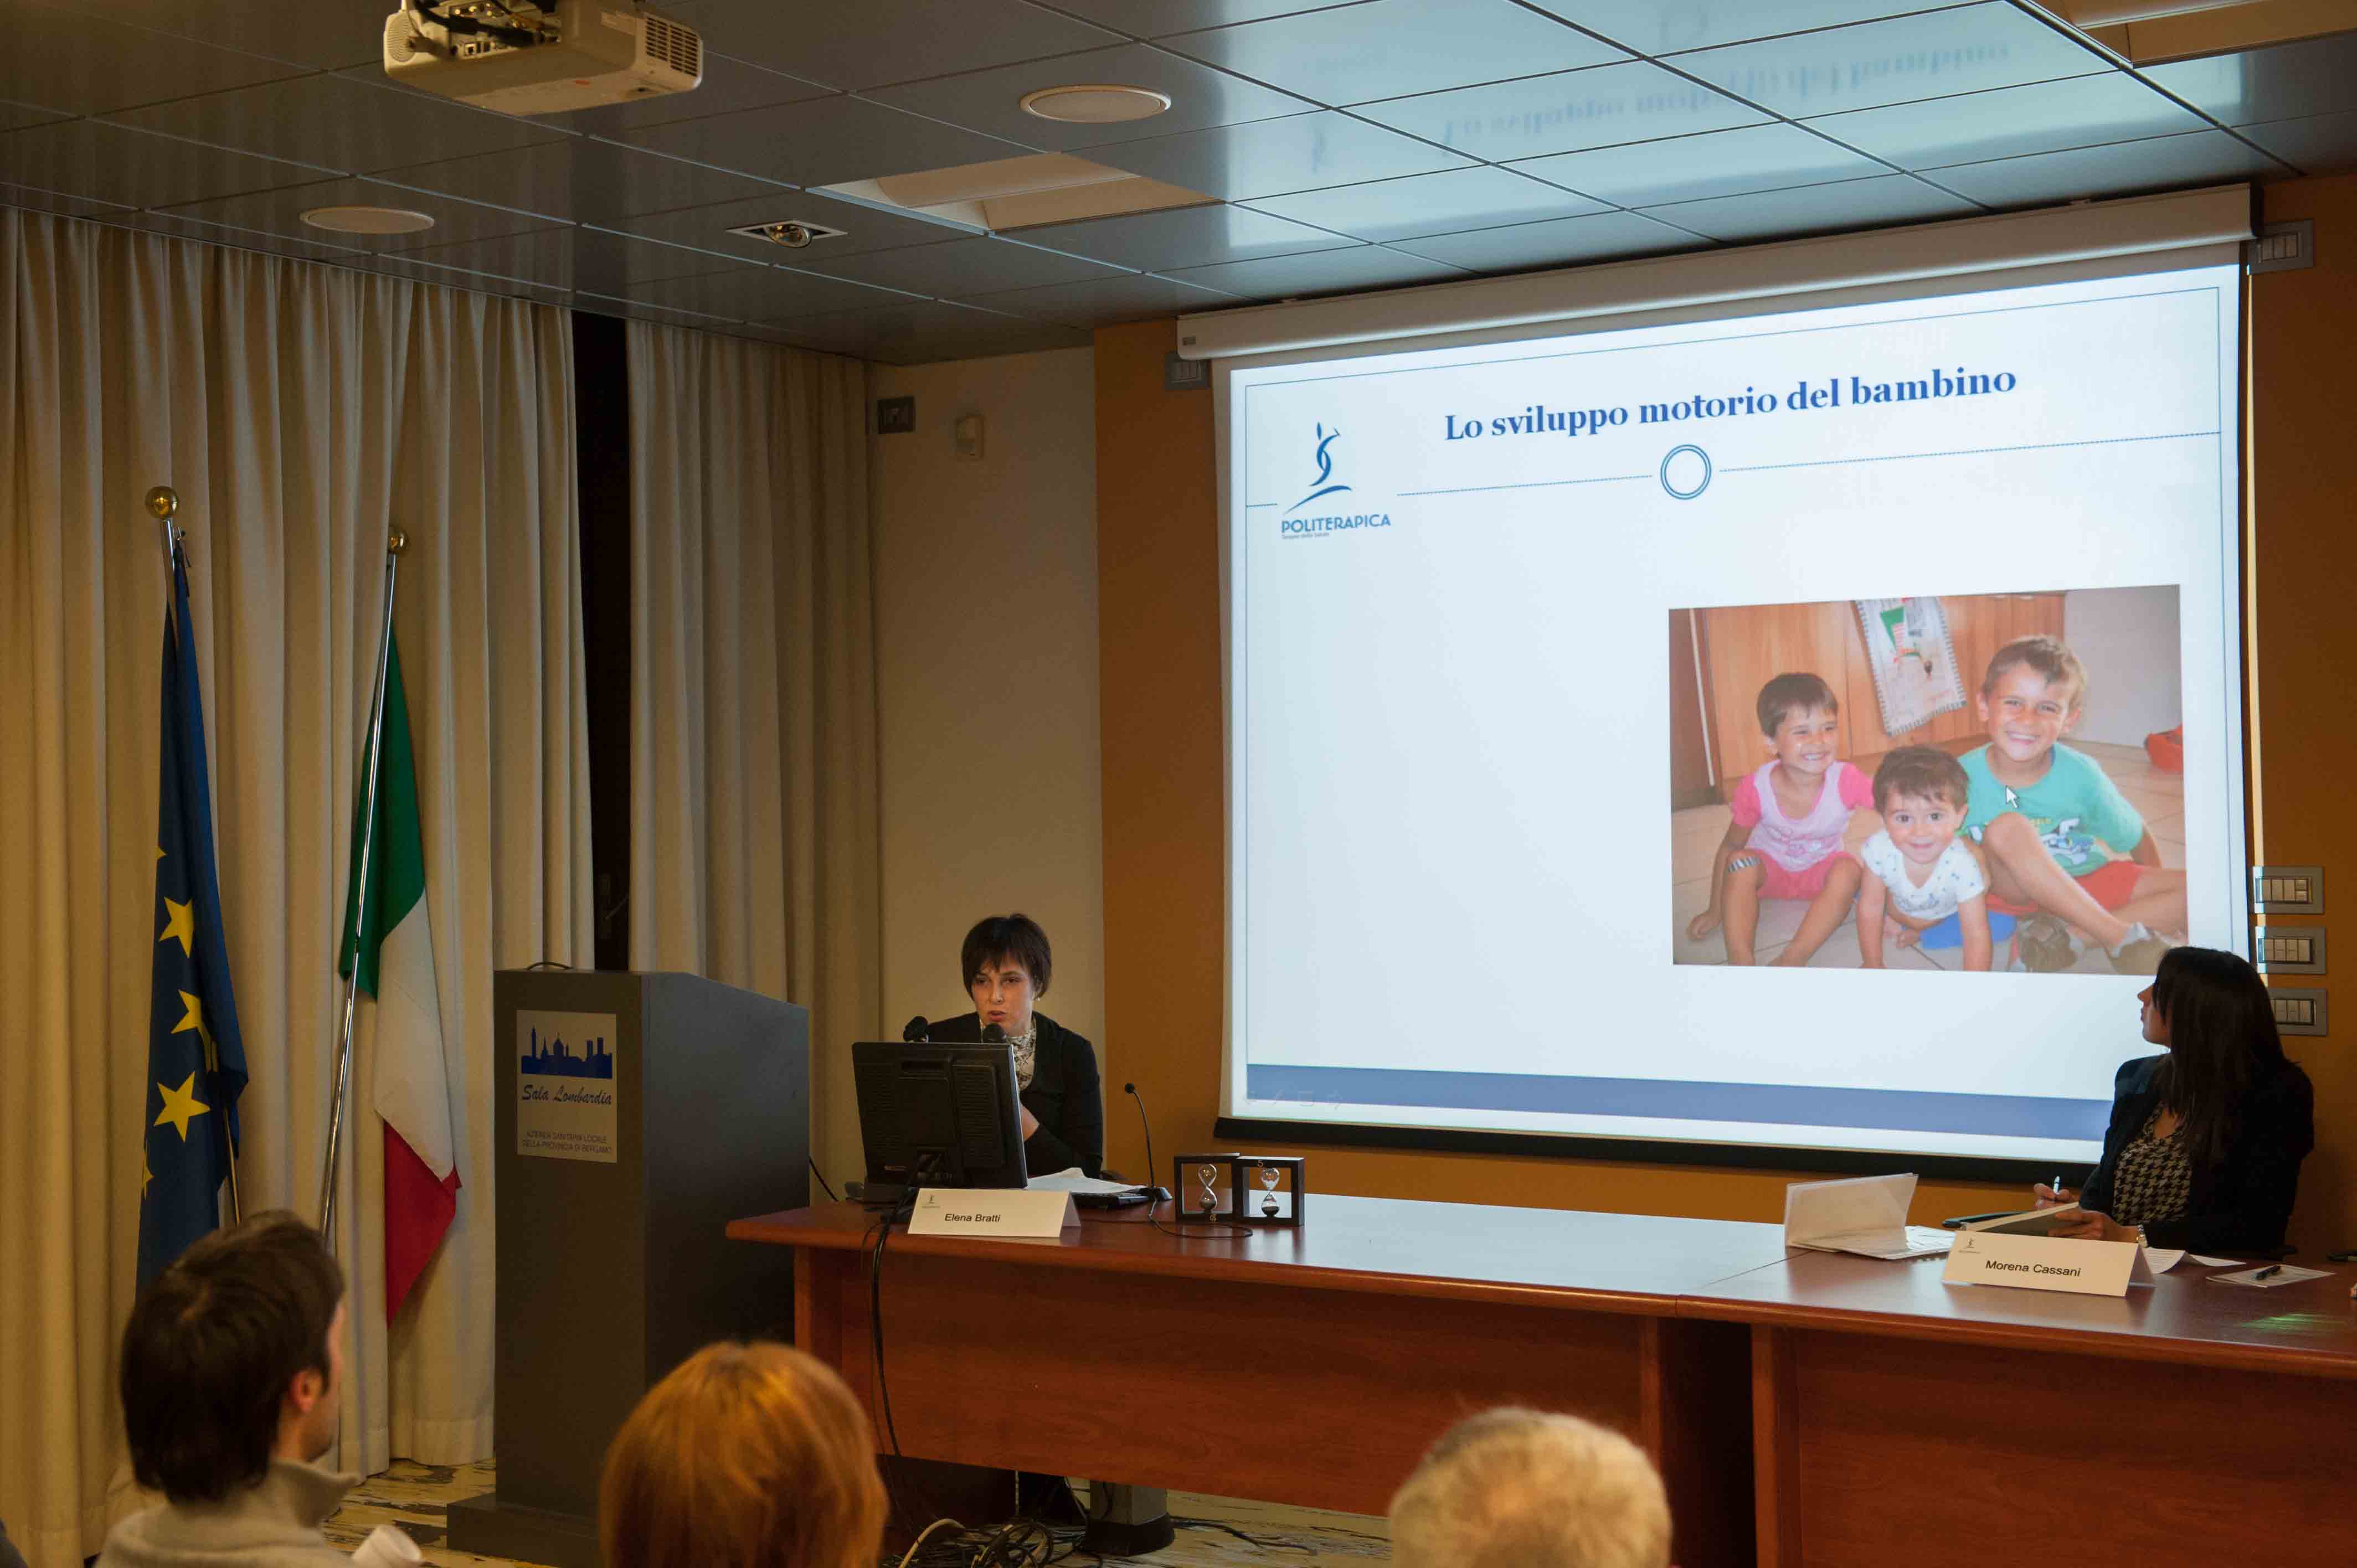 18.2.2014 - Interviene Elena Bratti, Terapista della Riabilitazione